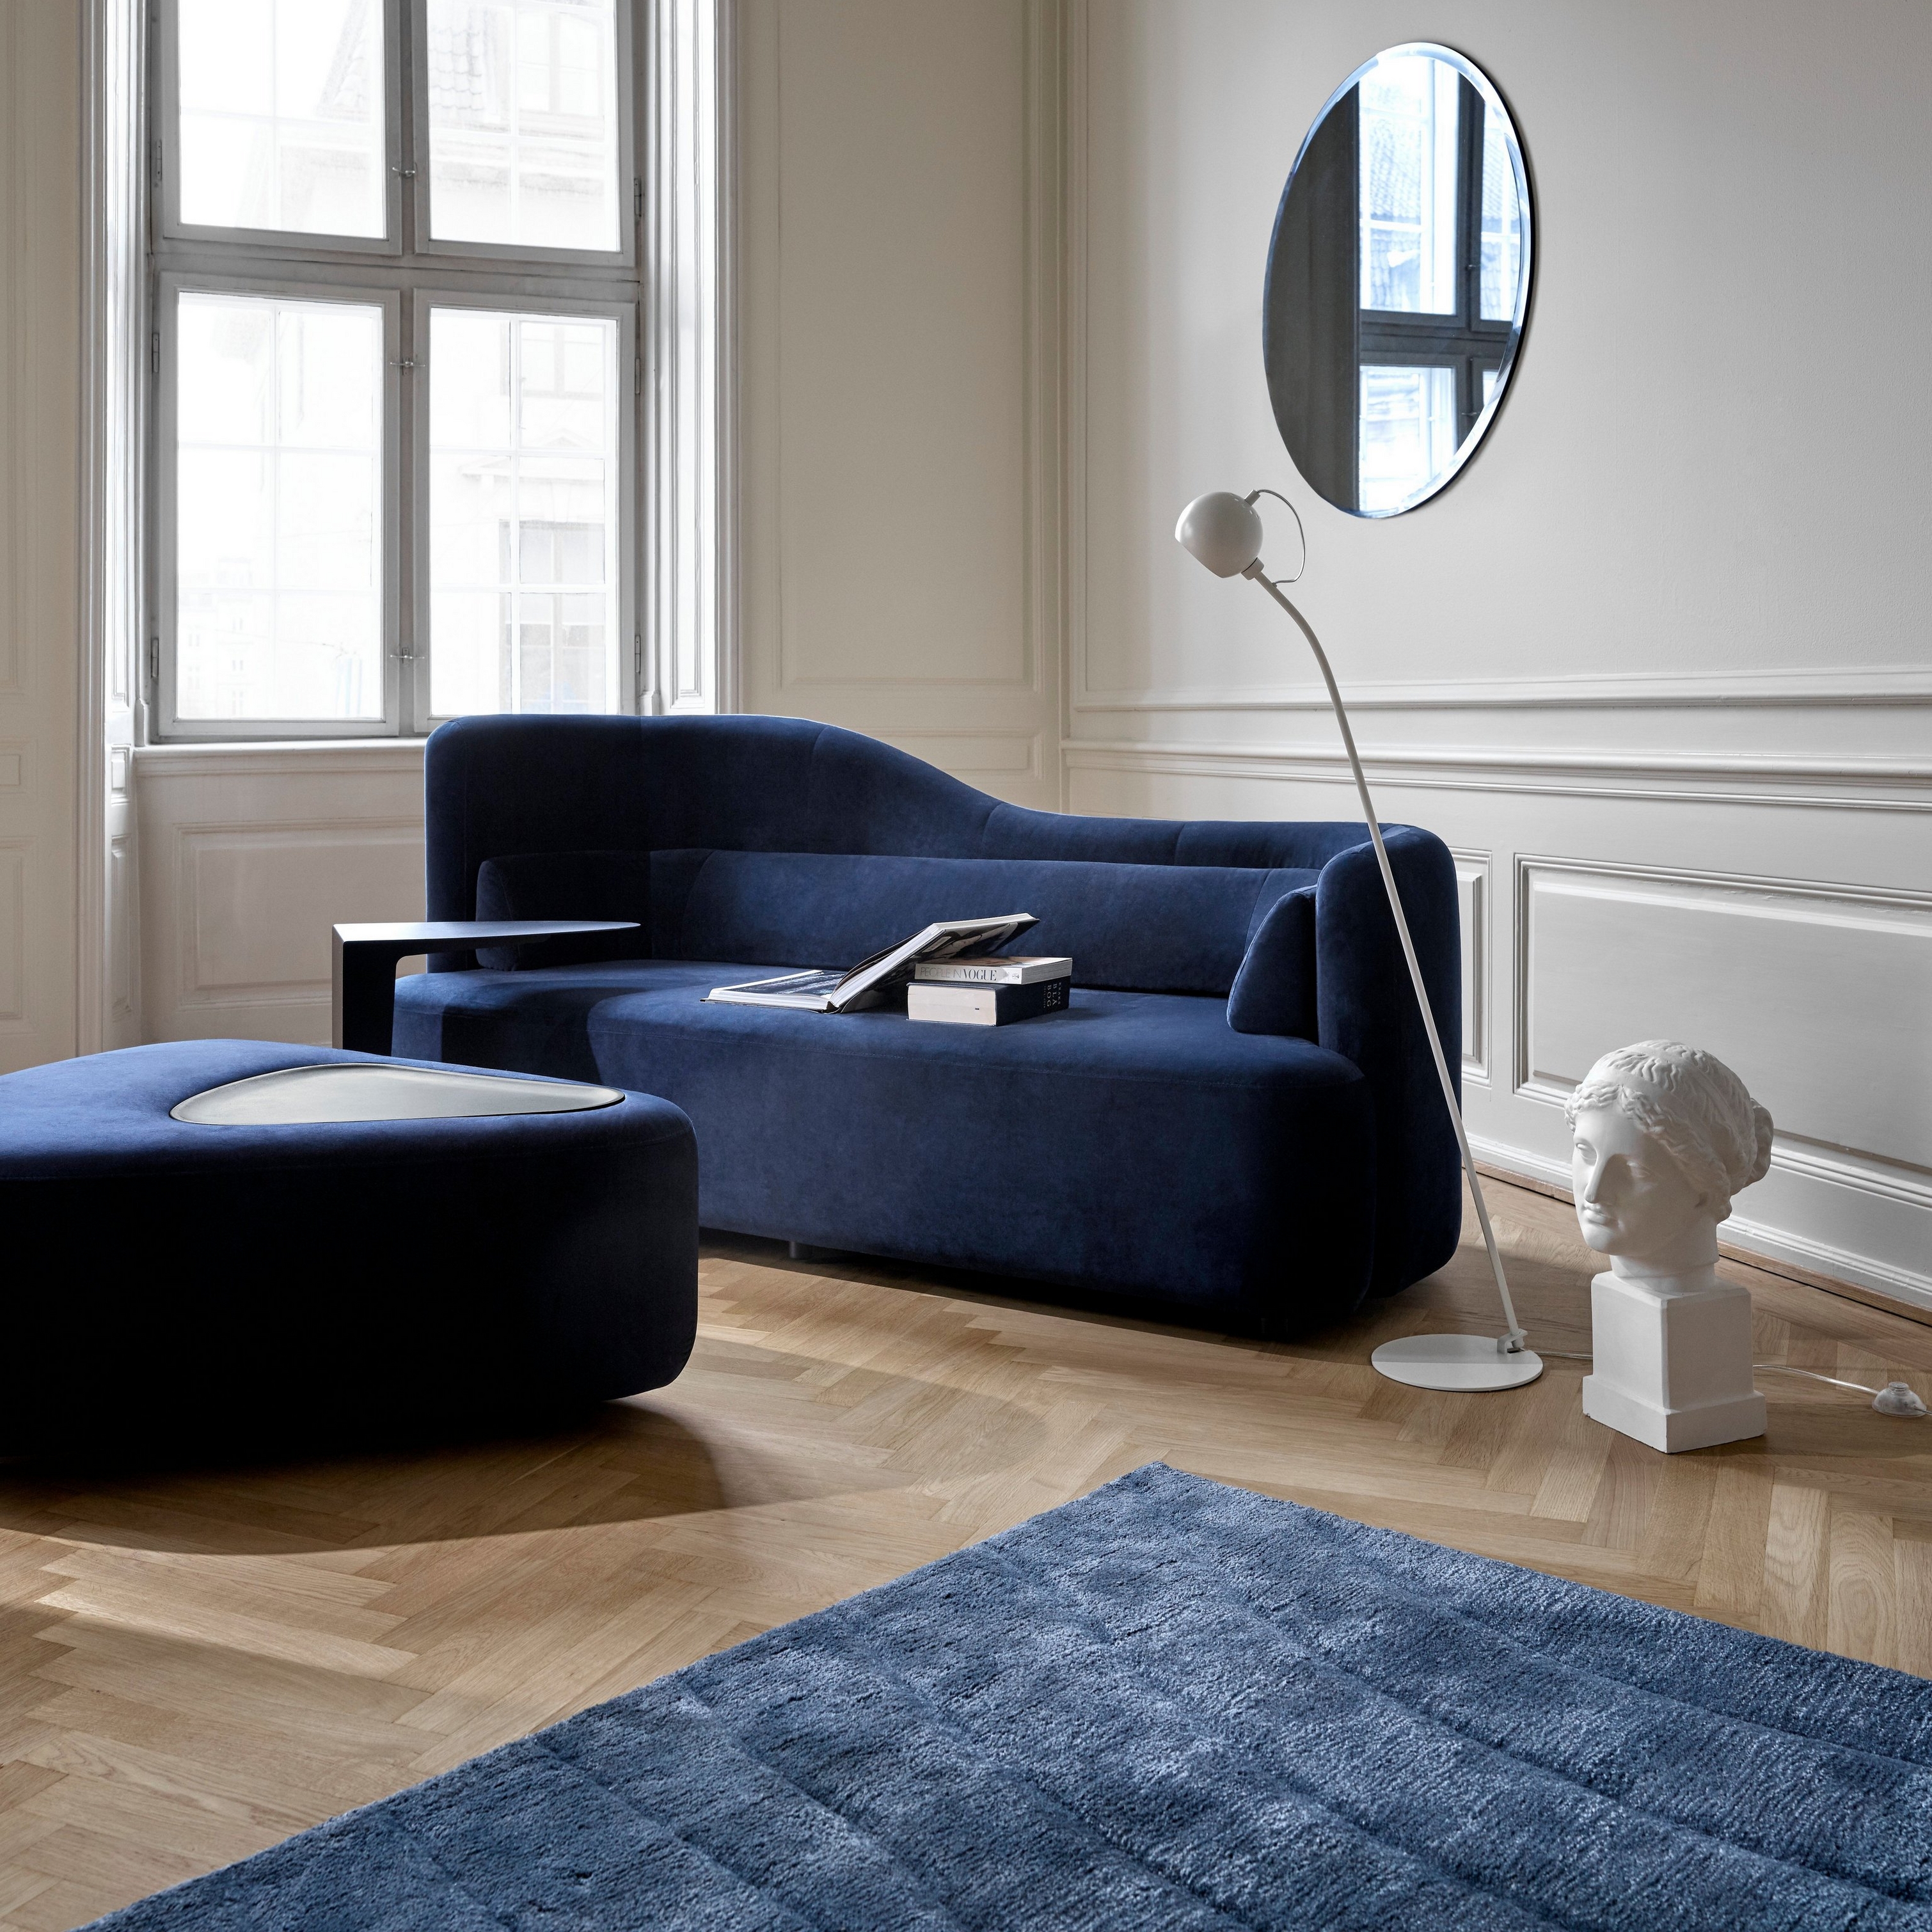 採用 Ottawa 沙發和藍色天鵝絨 Ottawa 腳凳的優雅住家空間